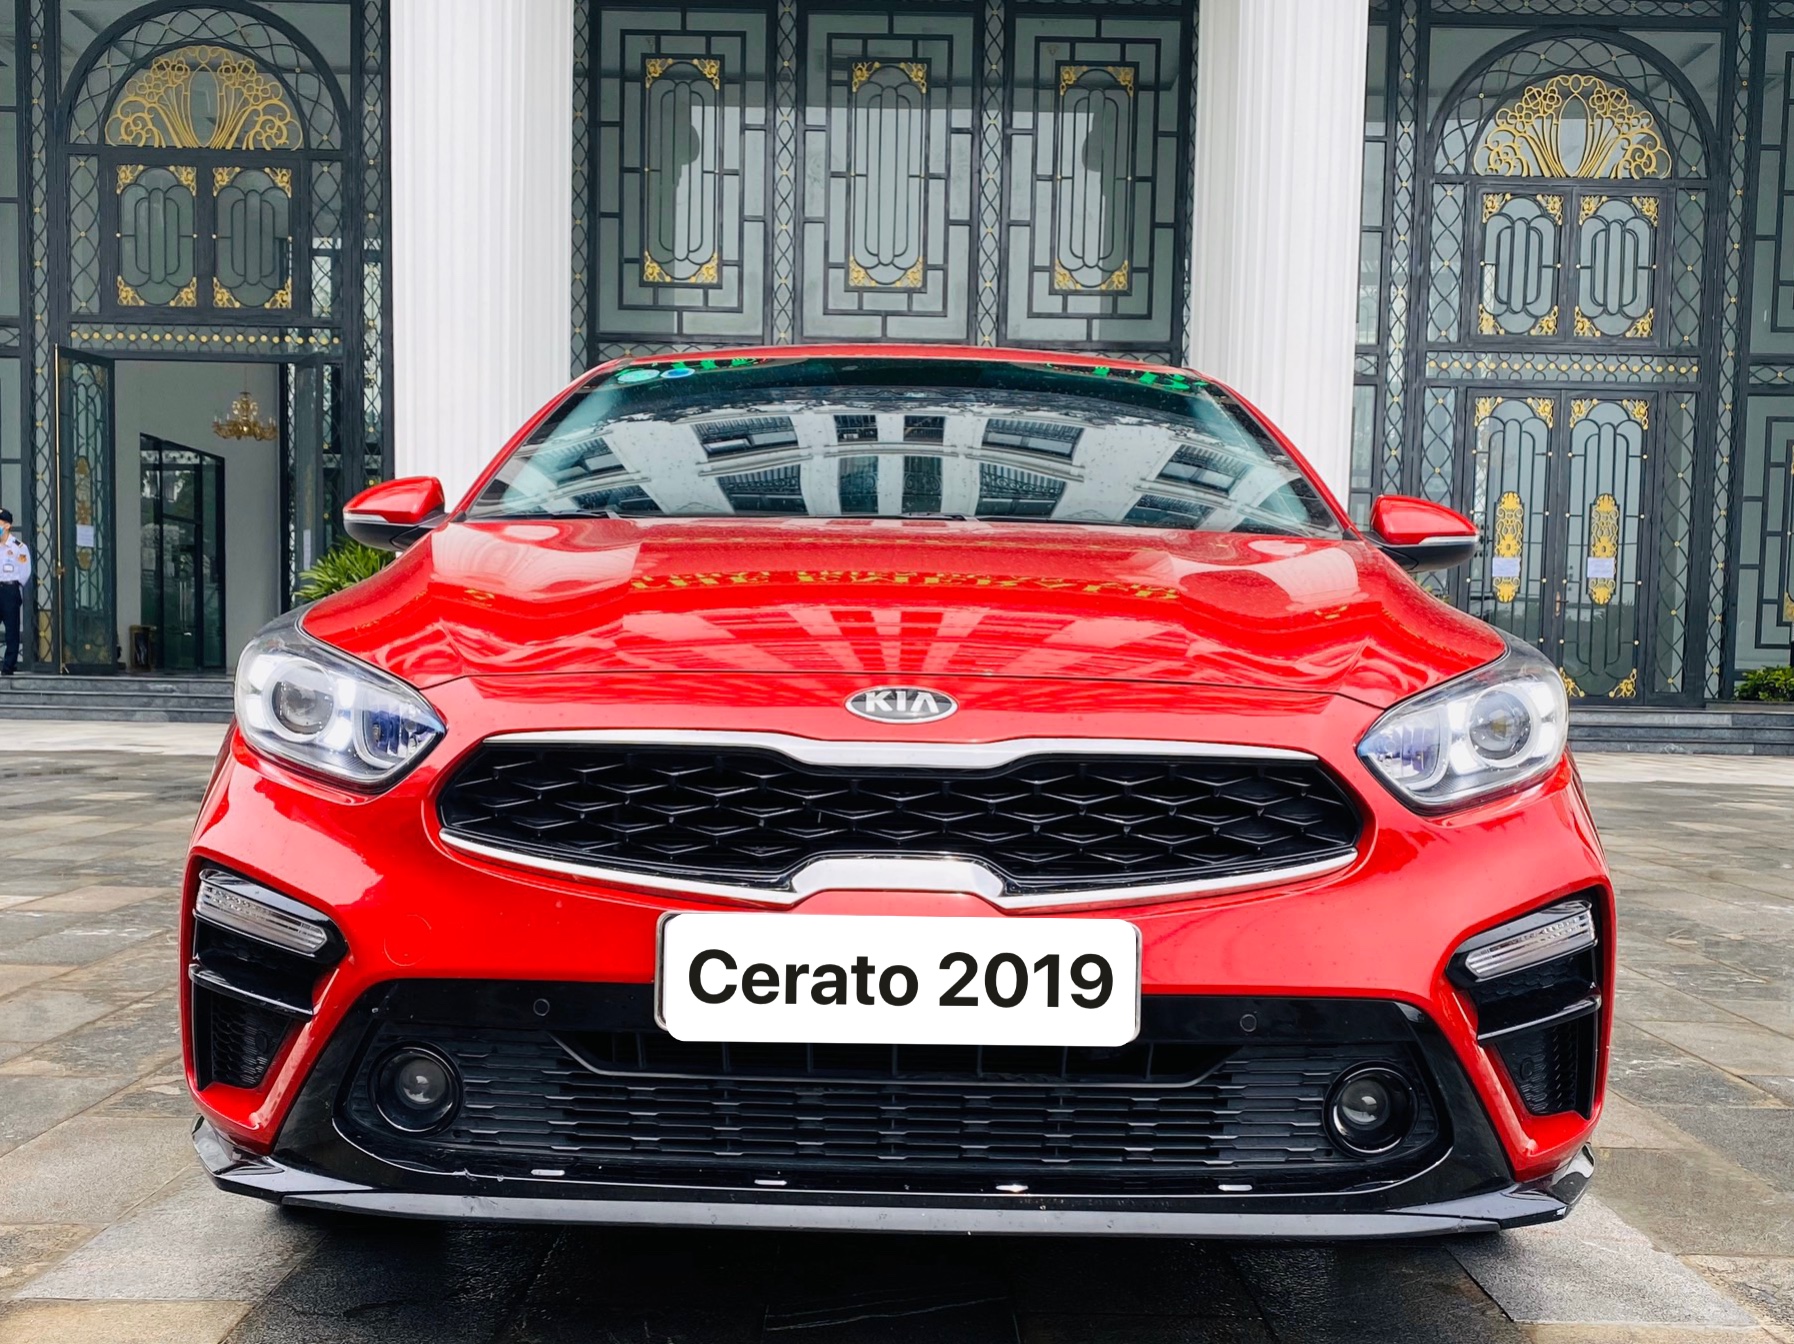 Tầm giá 700 triệu đồng có nên mua Kia Cerato 2019 hay không